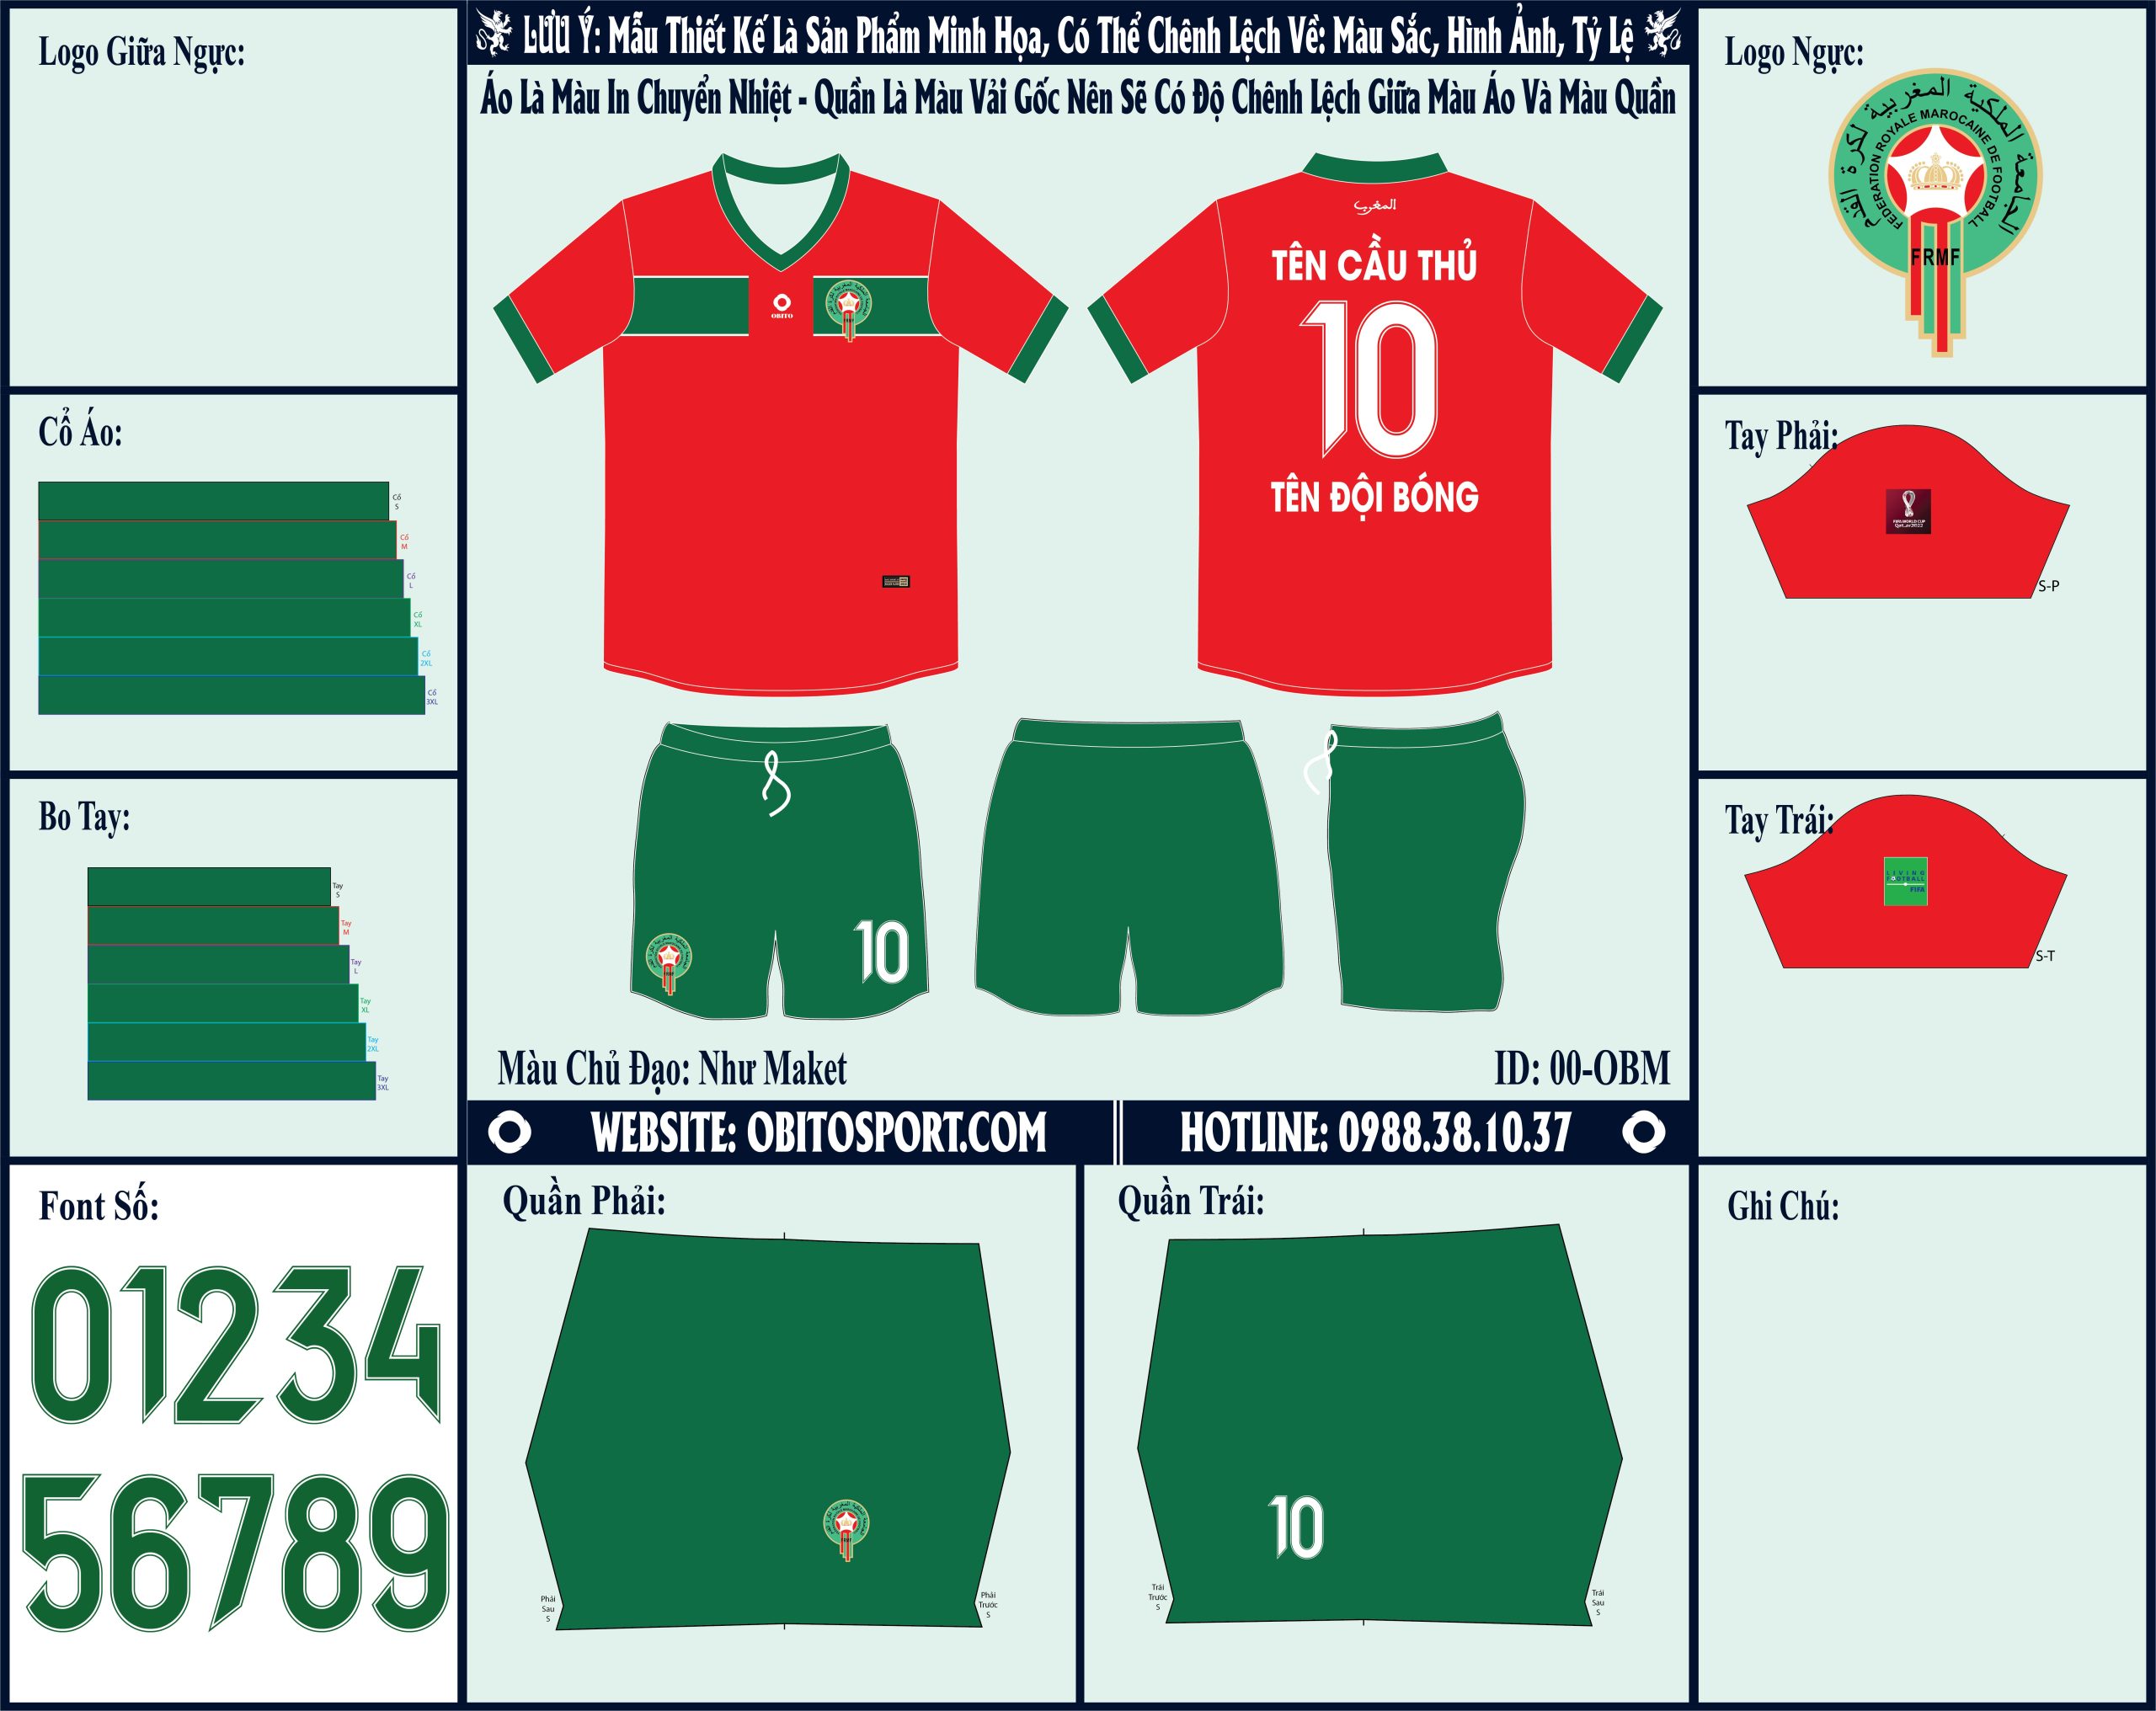 Mẫu ảnh áo đội tuyển Morocco sân nhà World Cup 2022 Market - Sản phẩm tốt, giá rẻ, nhiều ưu đãi và quà tặng khủng. Hơn nữa, mẫu áo còn được may với chất liệu vải được kiểm tra chặt chẽ. 